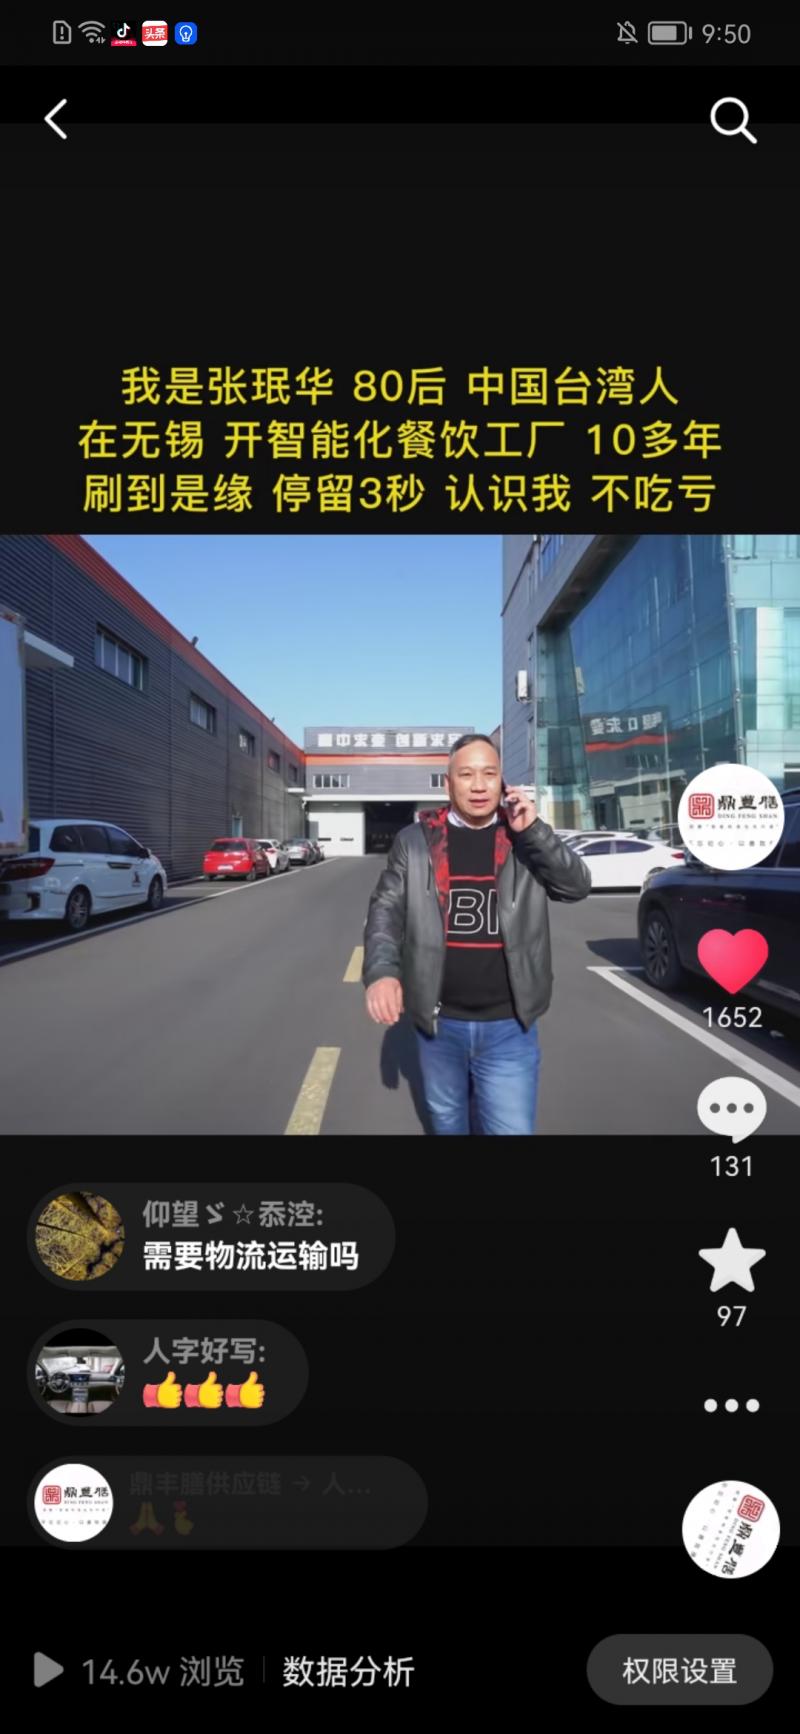 无锡鼎丰膳供应链管理有限责任公司-抖音短视频爆款案例